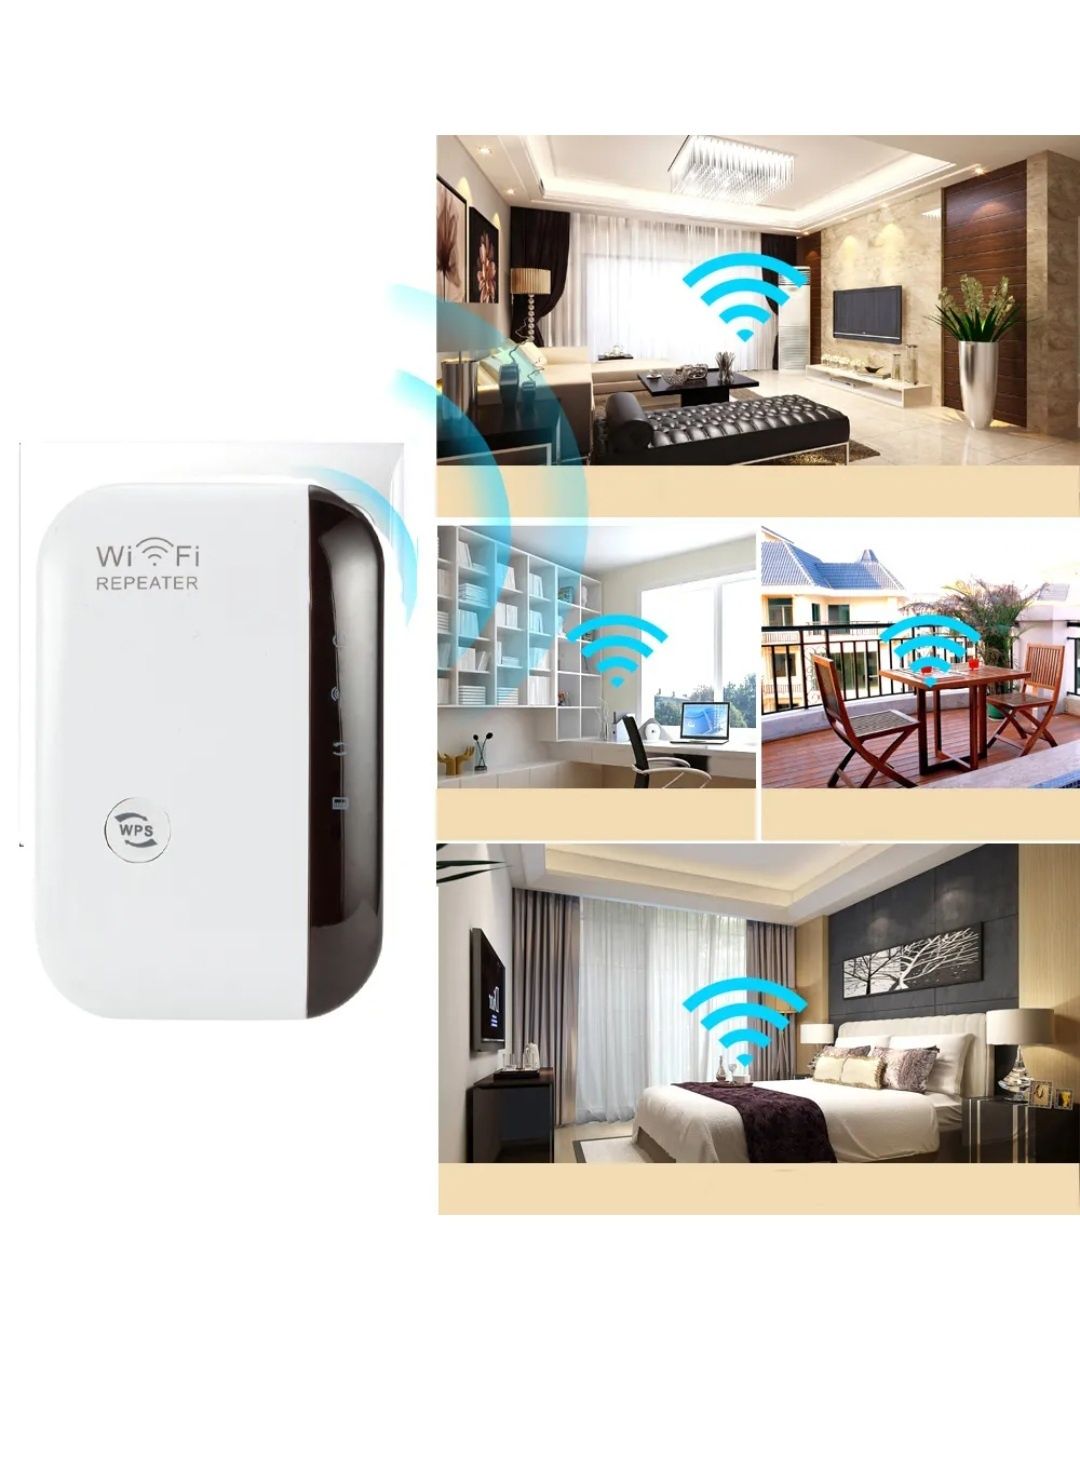 Mocny wzmacniacz sygnału Wi-Fi Repeater

SKUTECZNIE ZWIĘKSZ ZASIĘG INT